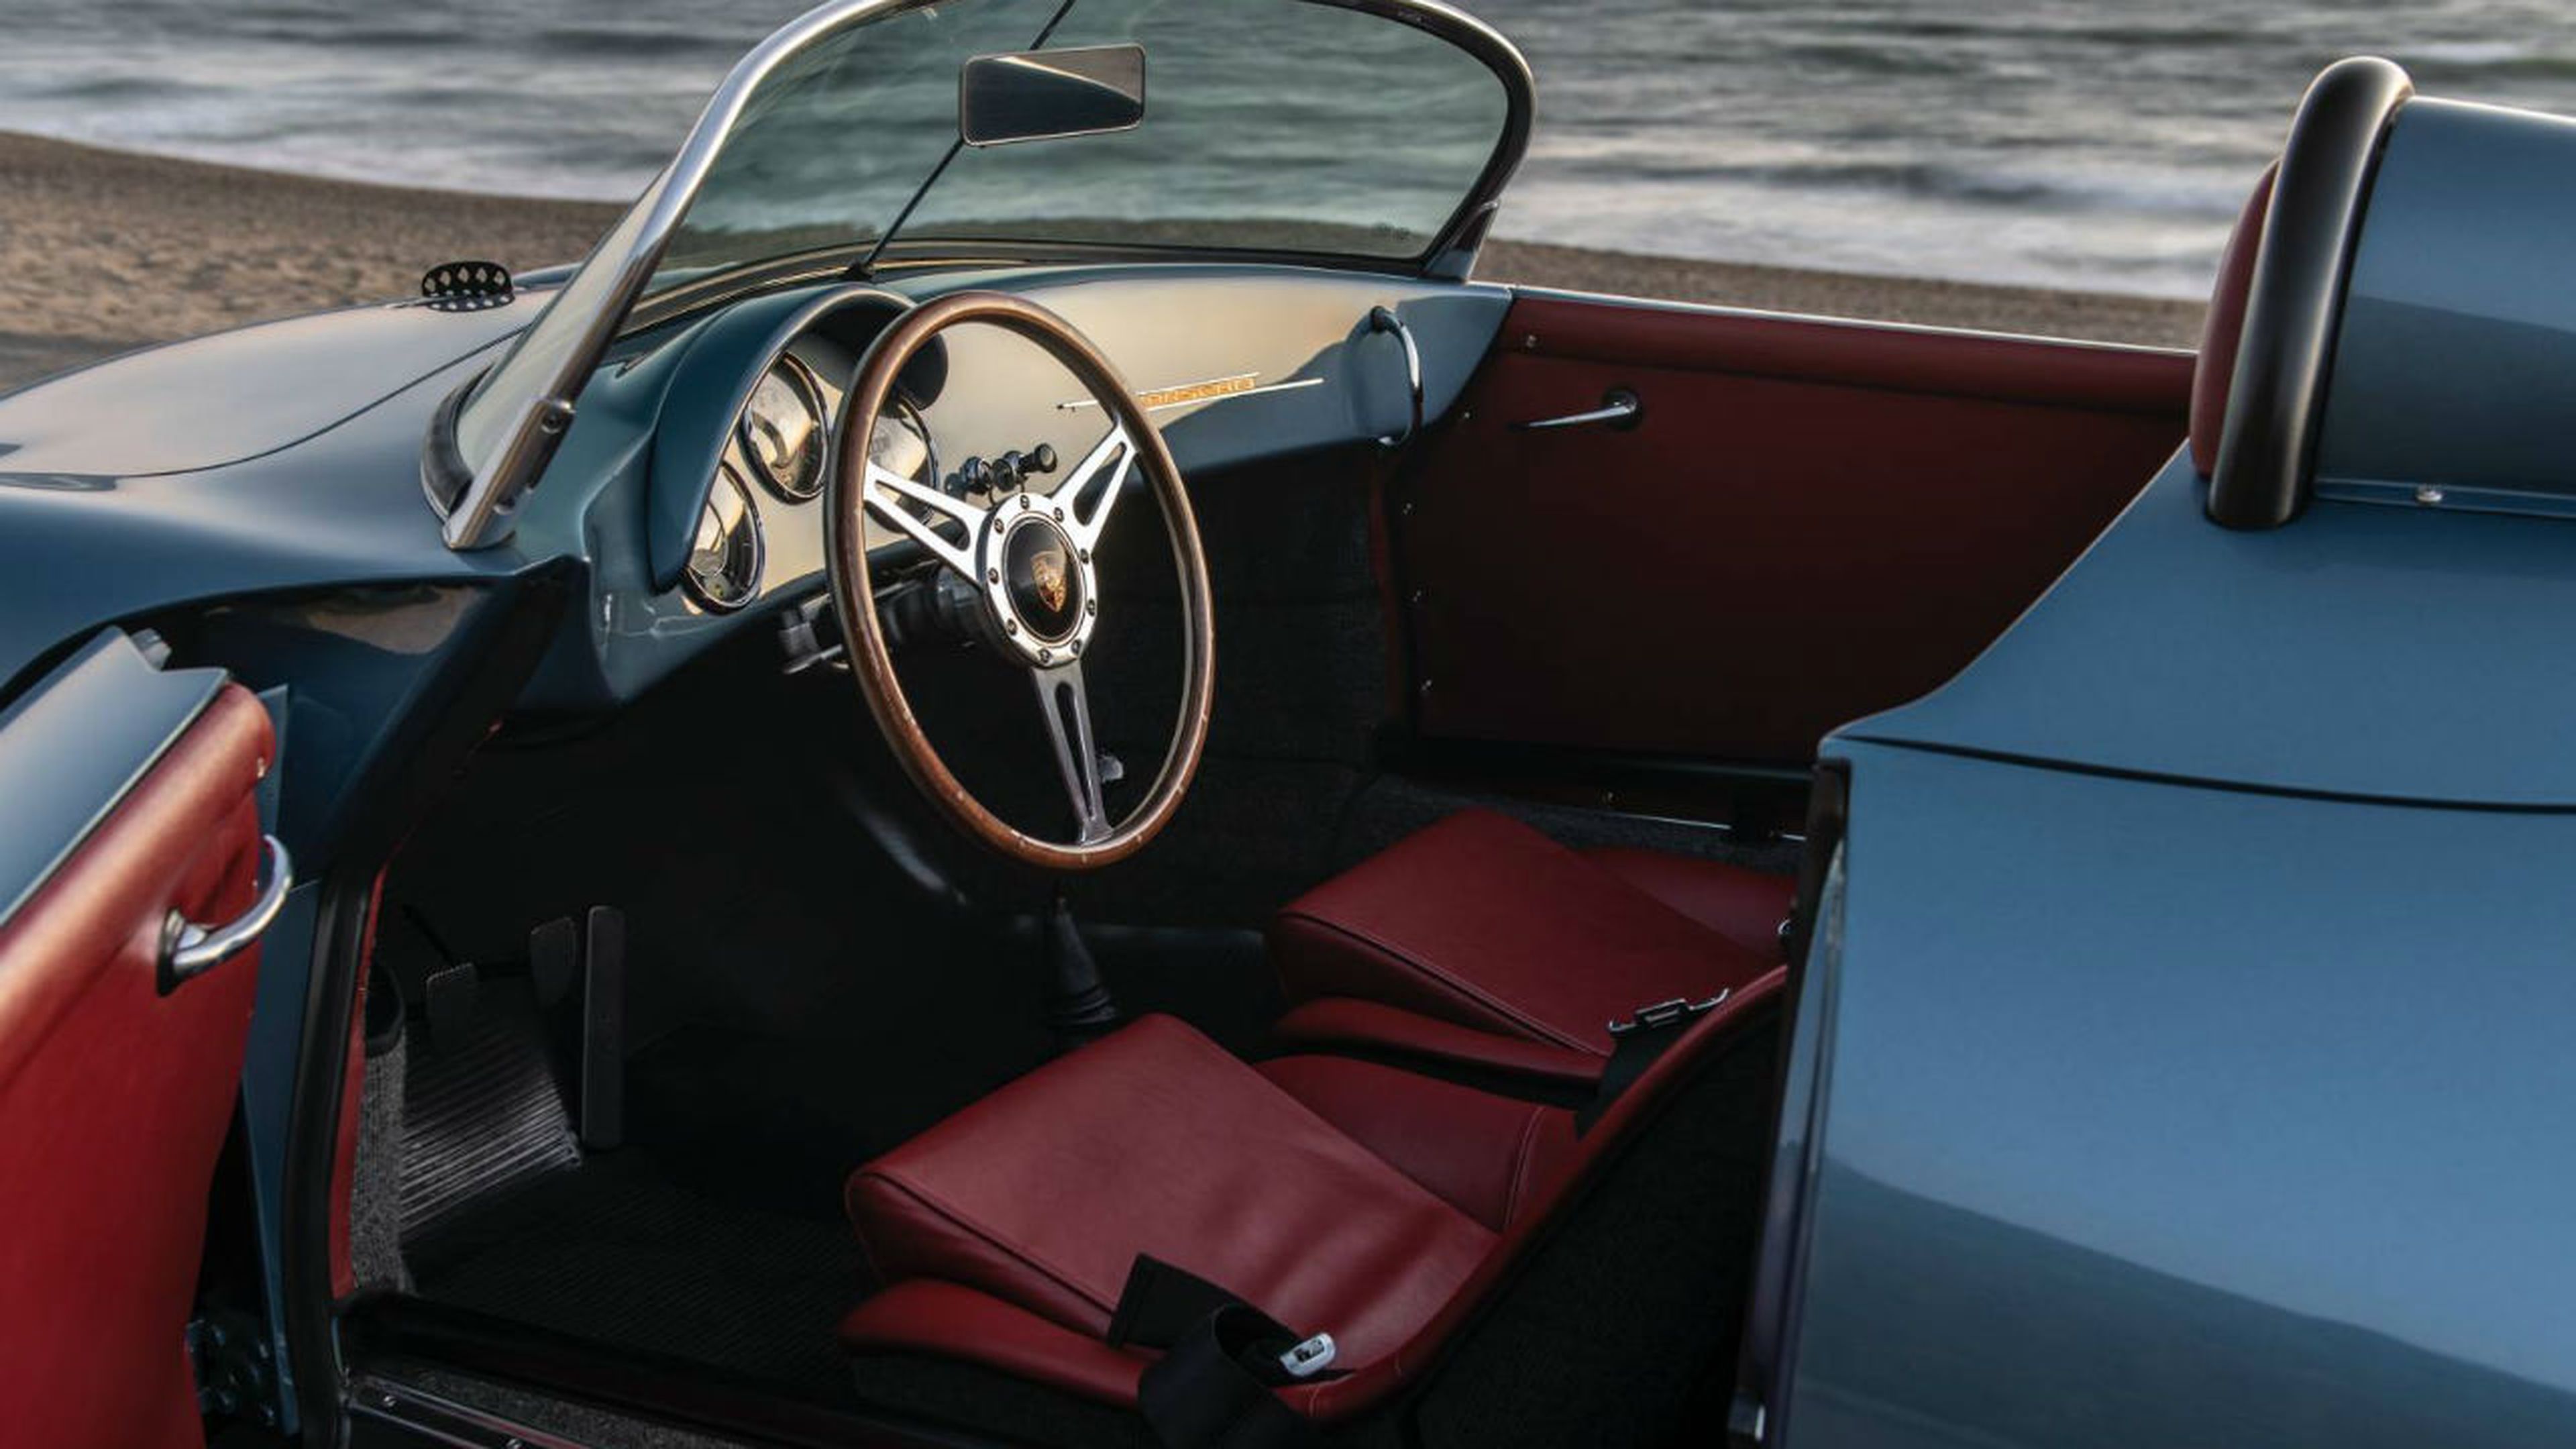 El interior del Porsche 356 Speedster destaca por la carrocería de cuero rojo elegida.